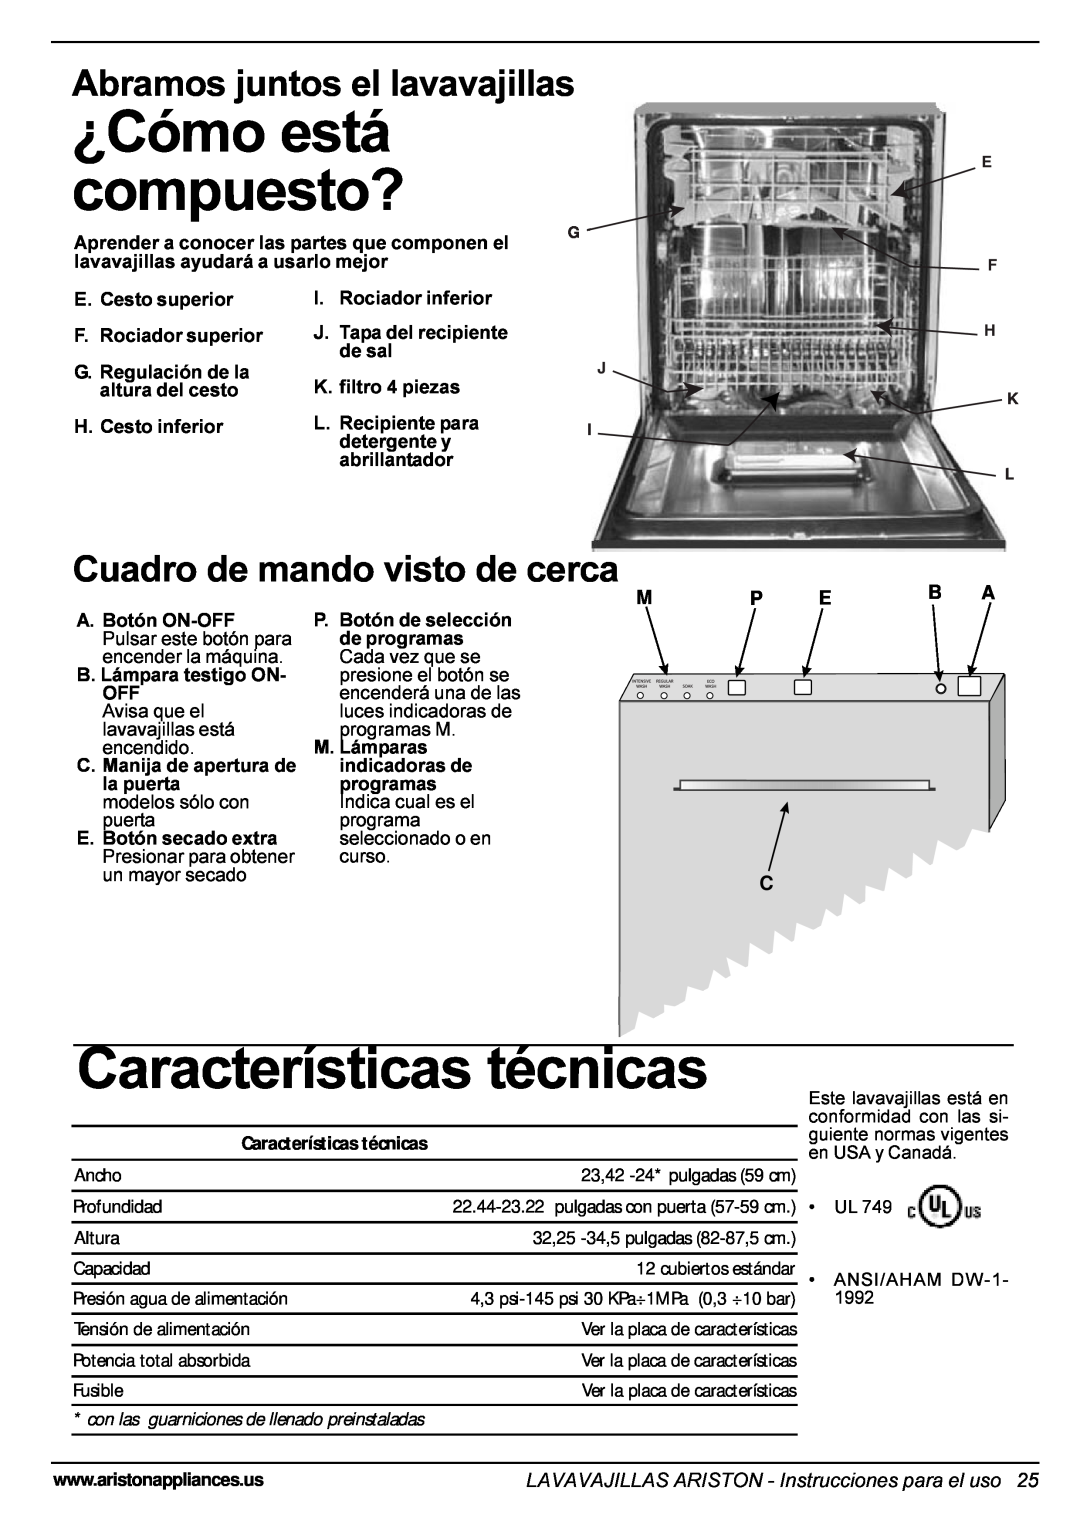 Ariston LI 640 I-B-S-W manual ¿Cómo está compuesto?, Características técnicas, Abramos juntos el lavavajillas, P Eb A C 